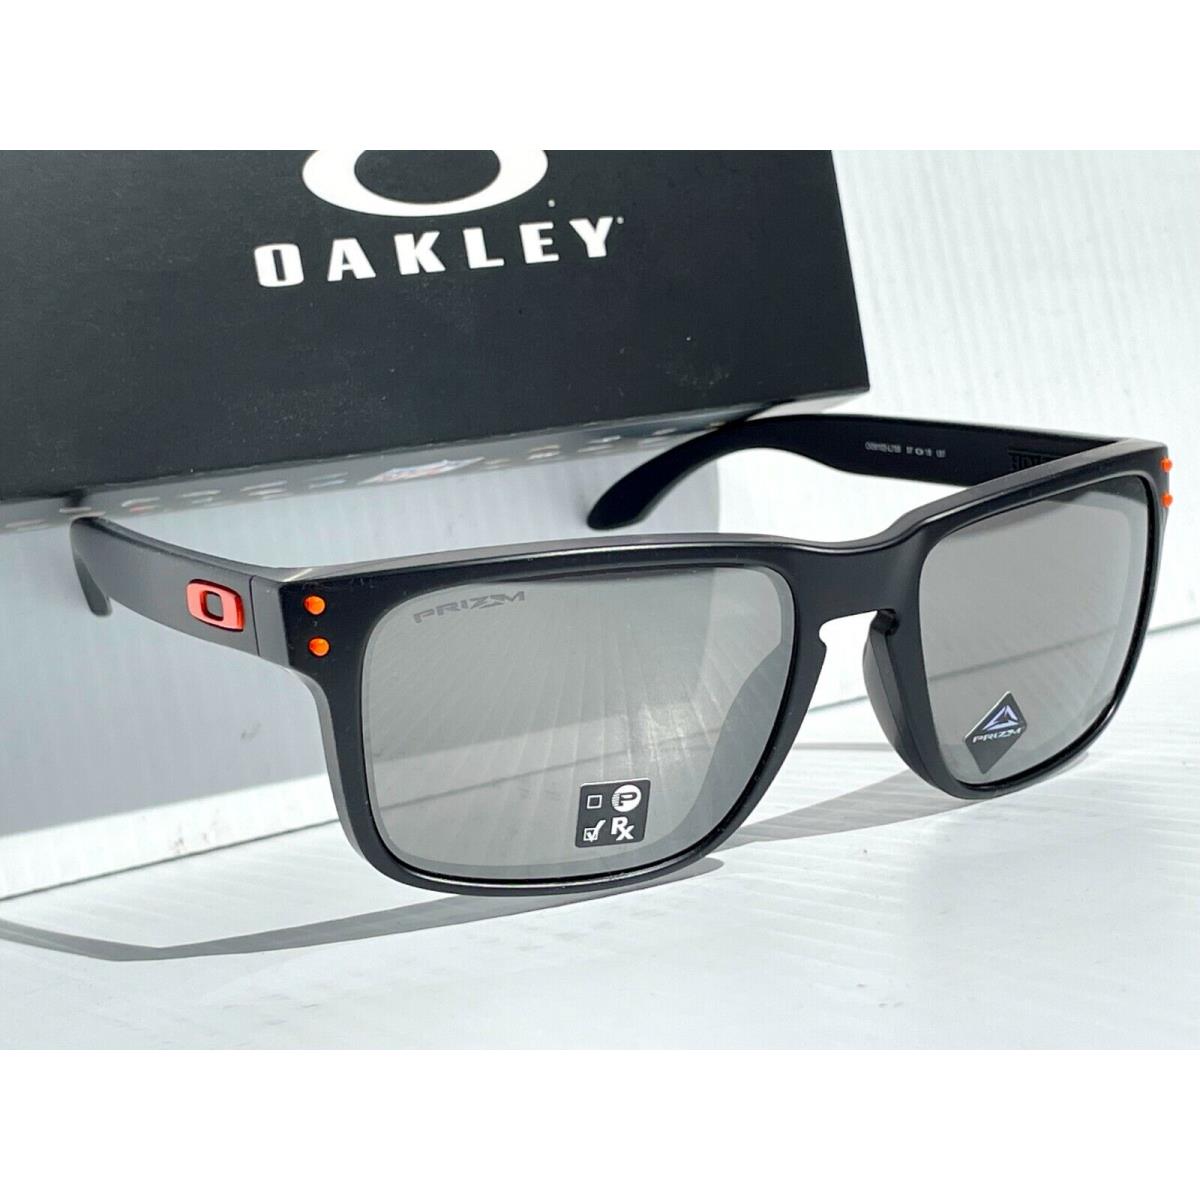 Oakley sunglasses Holbrook - Black Frame, Silver Lens 9